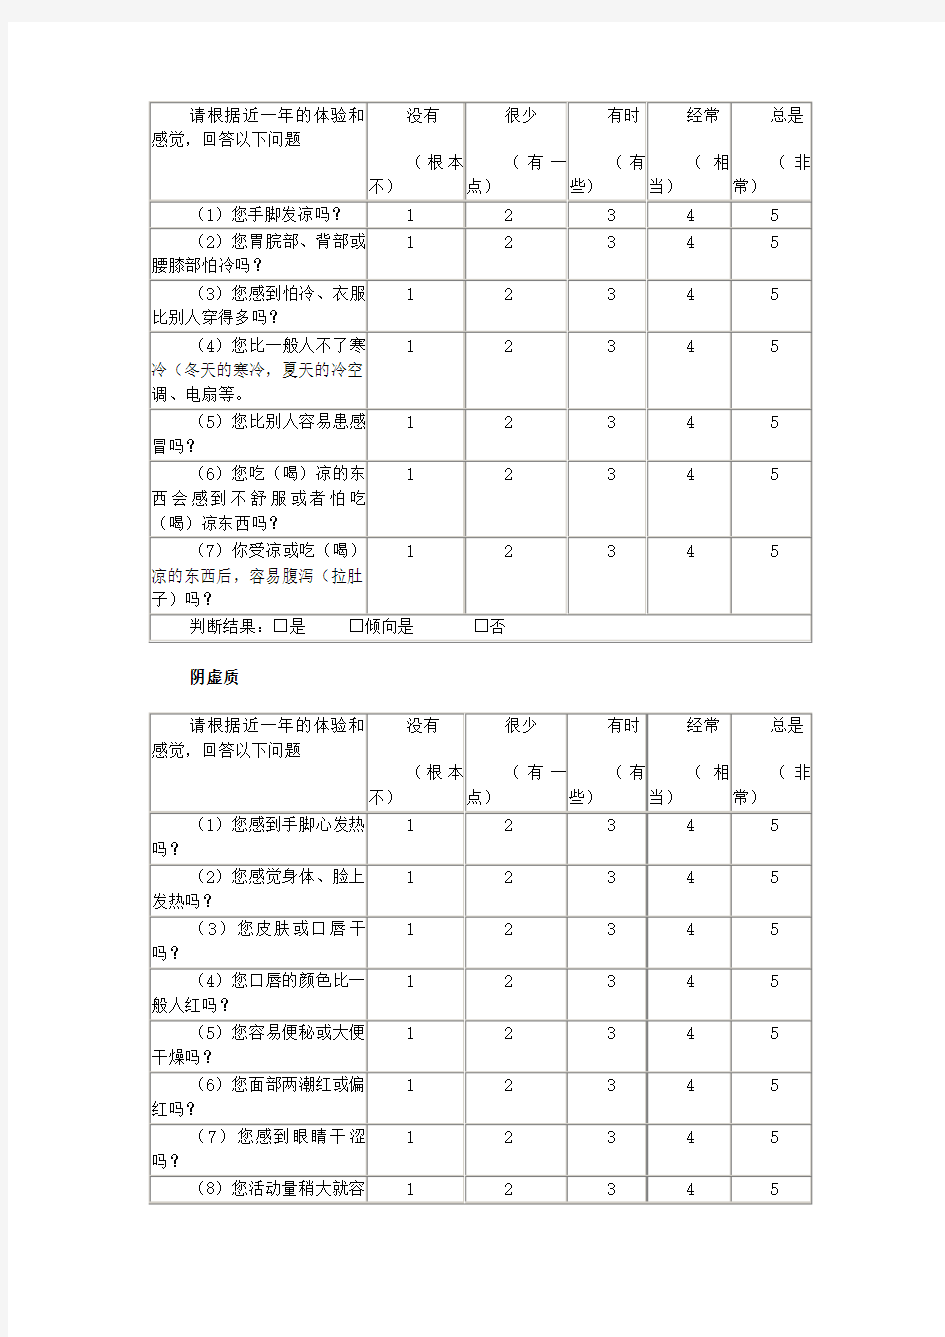 中医体质辨识标准(评分标准)